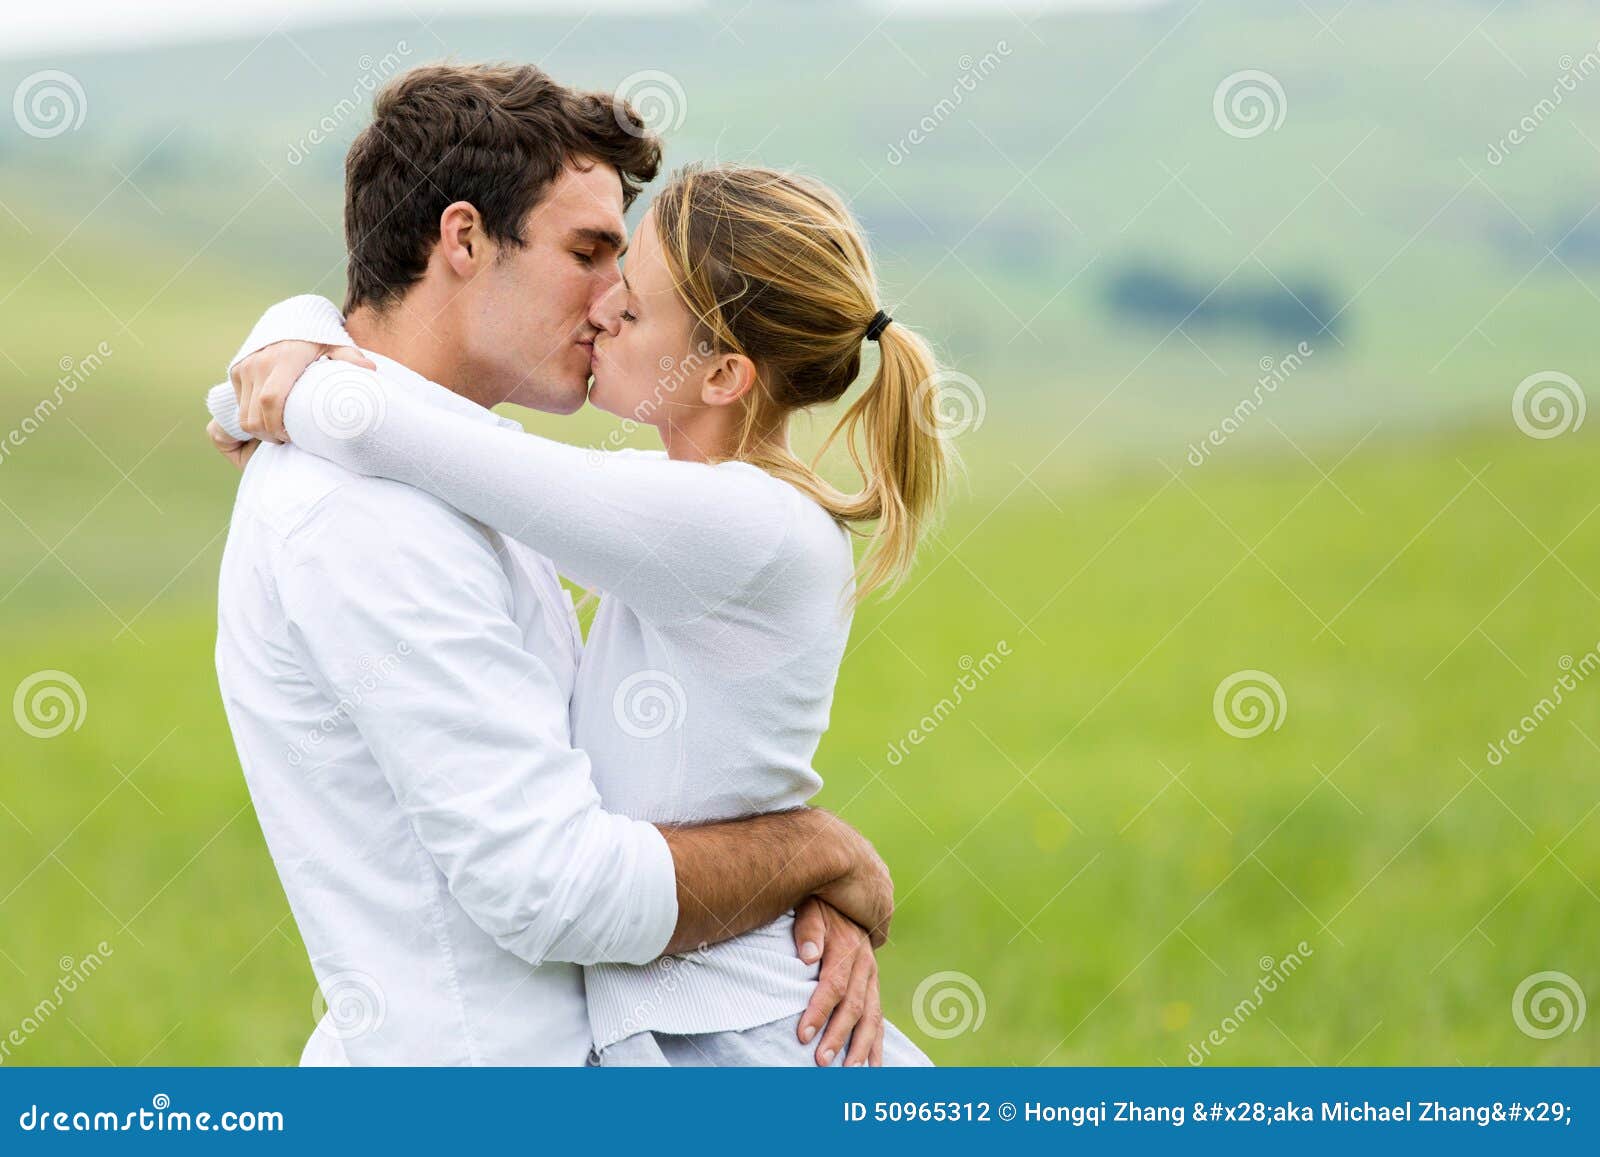 Baisers Romantiques De Couples Photo stock - Image du adulte, couples ...